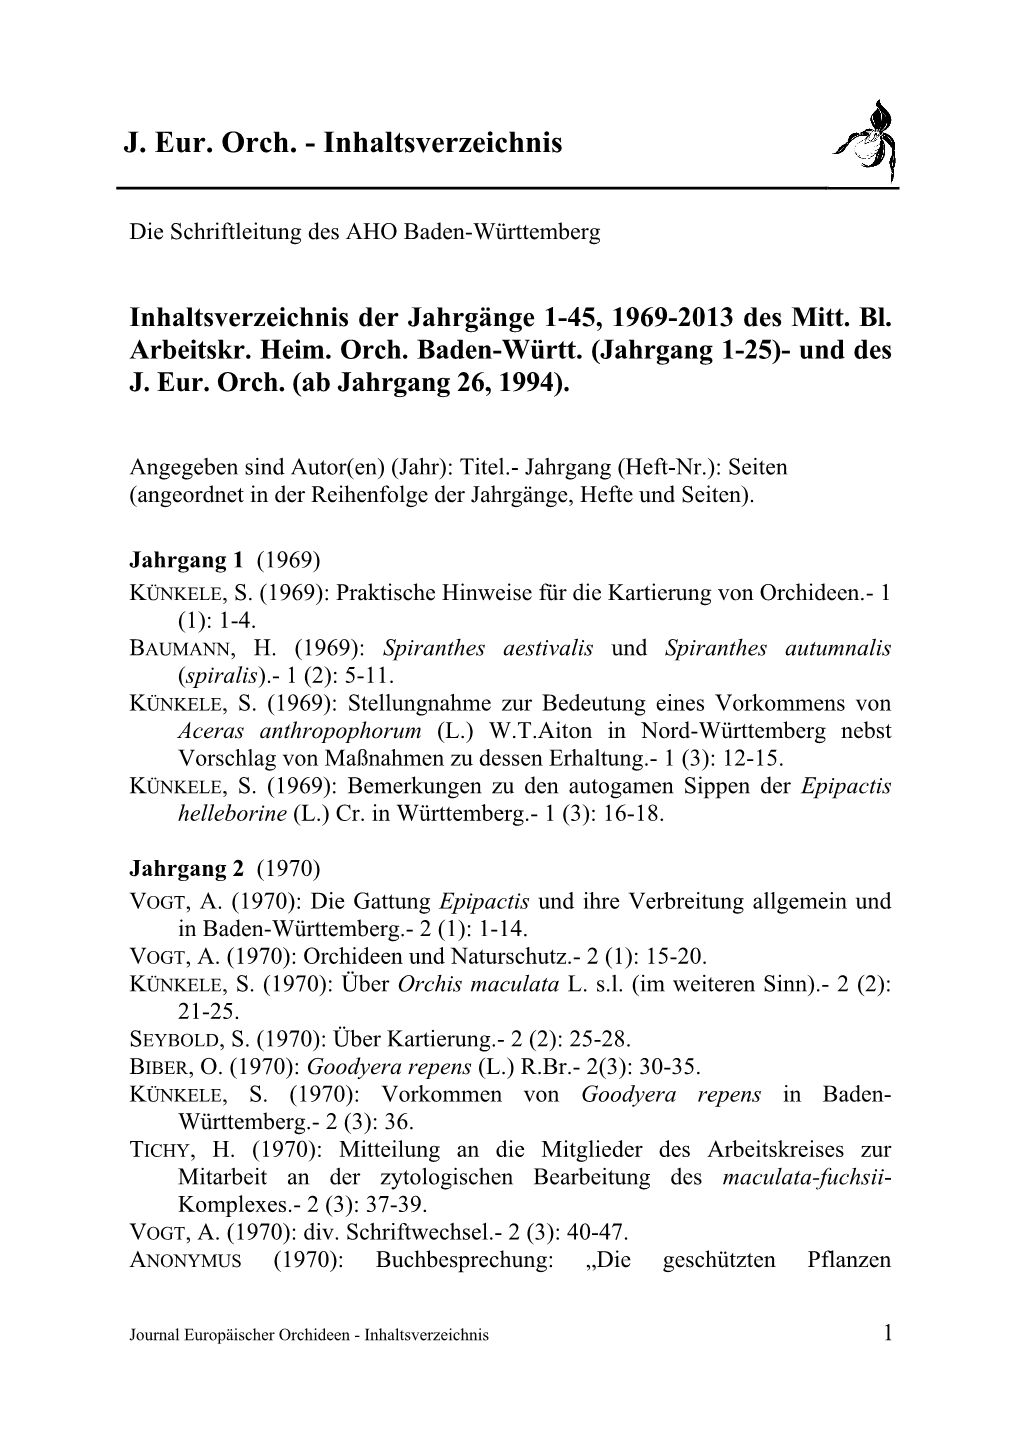 JEO Inhaltsverzeichnis 1-45, 1969-2013